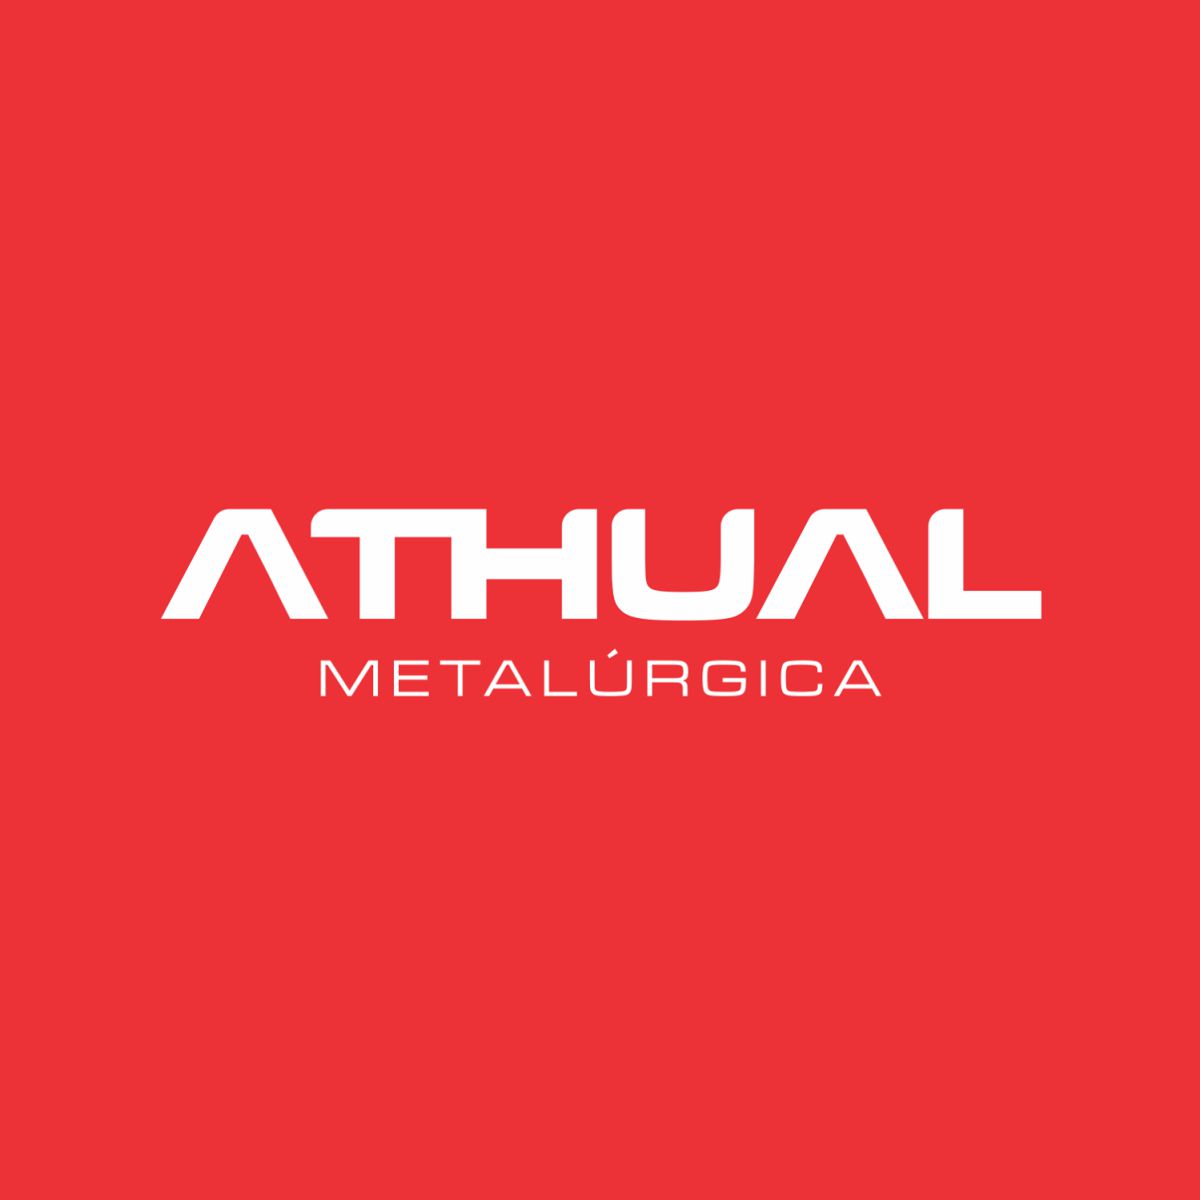 Metalúrgica Athual Ltda